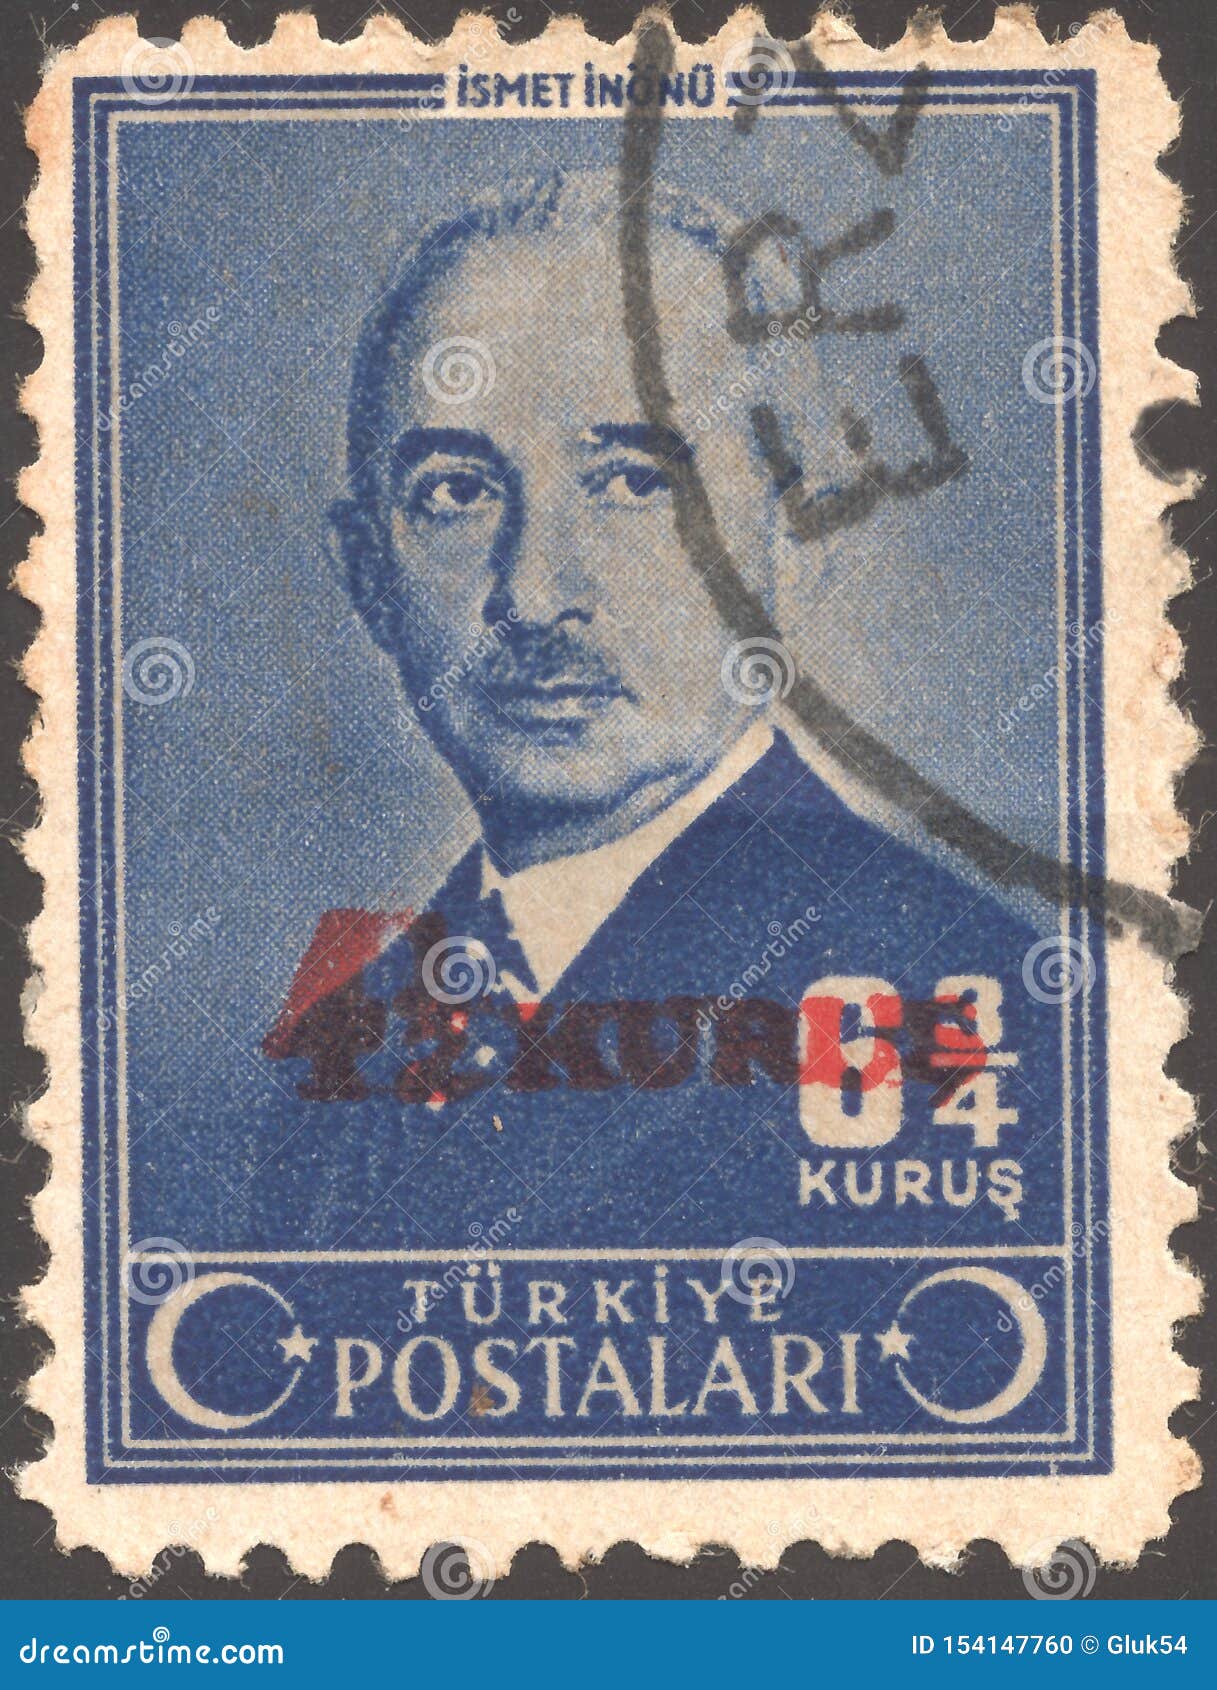 Turkiet Circa 1950: Stolpestämpeln skrivev ut Turkiet Mustafa Ismet Inonu - turkiskt allmänt och statsman, som tjänade som som den andra presidenten av Turkiet från 10 November 1938 till 27 Maj 1950 Circa 1945